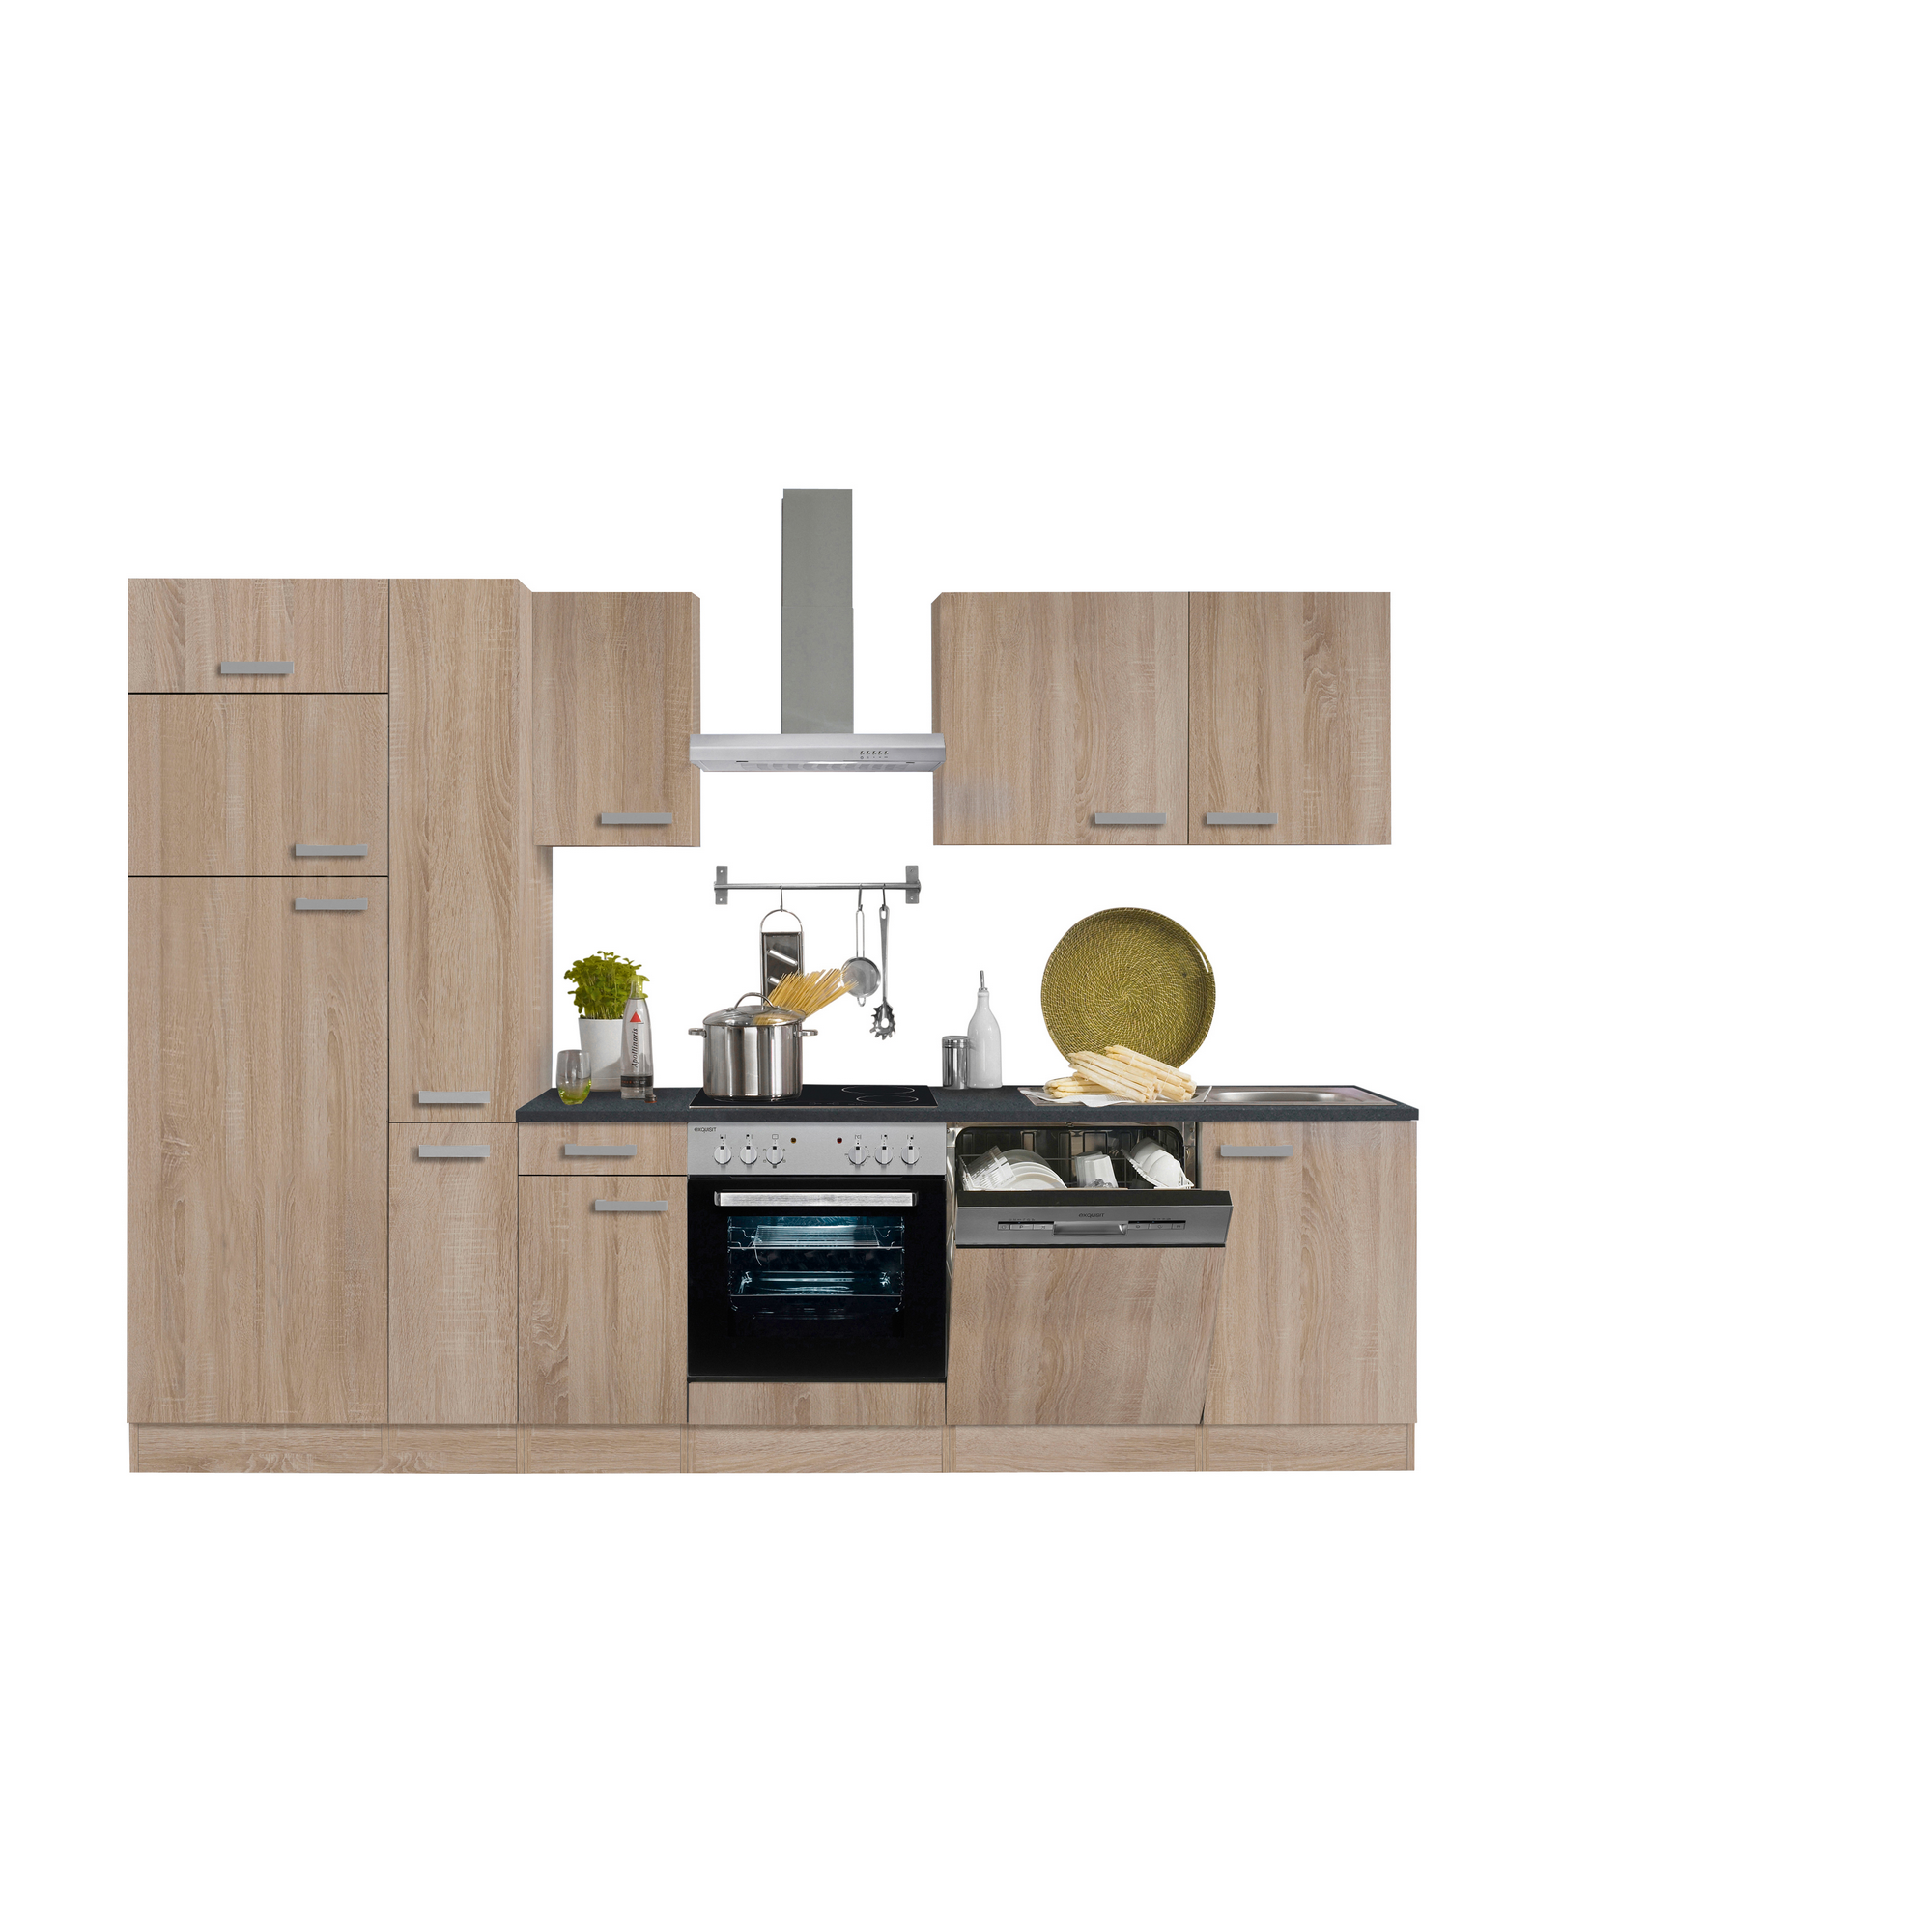 Küchenzeile mit E-Geräten 'OPTIkompakt Monza' eichefarben/anthrazit 300 cm + product picture